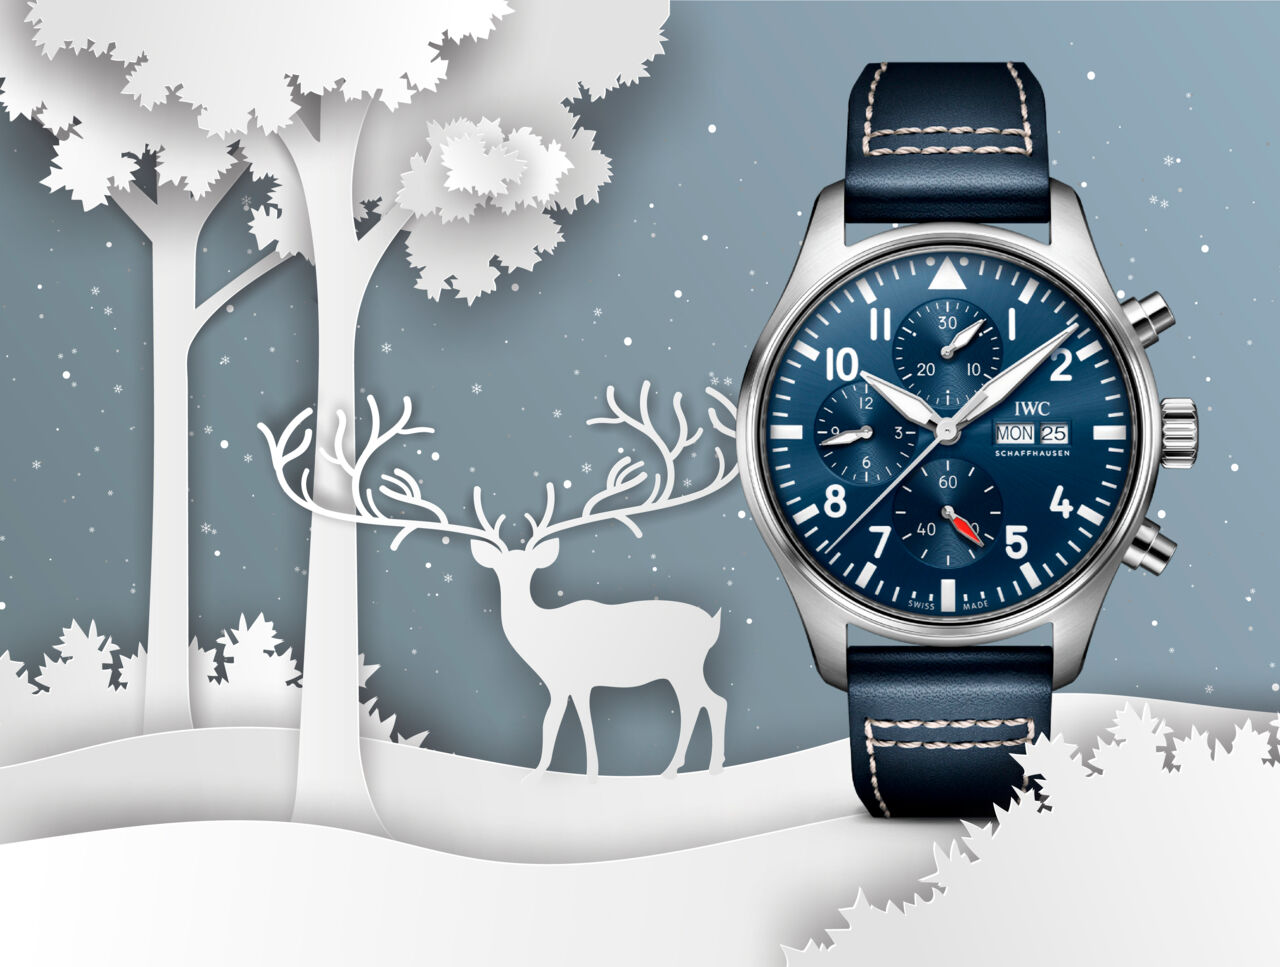 IWC Pilot´s Watch Chronograph 41mm blau in weihnachtlicher Kulisse